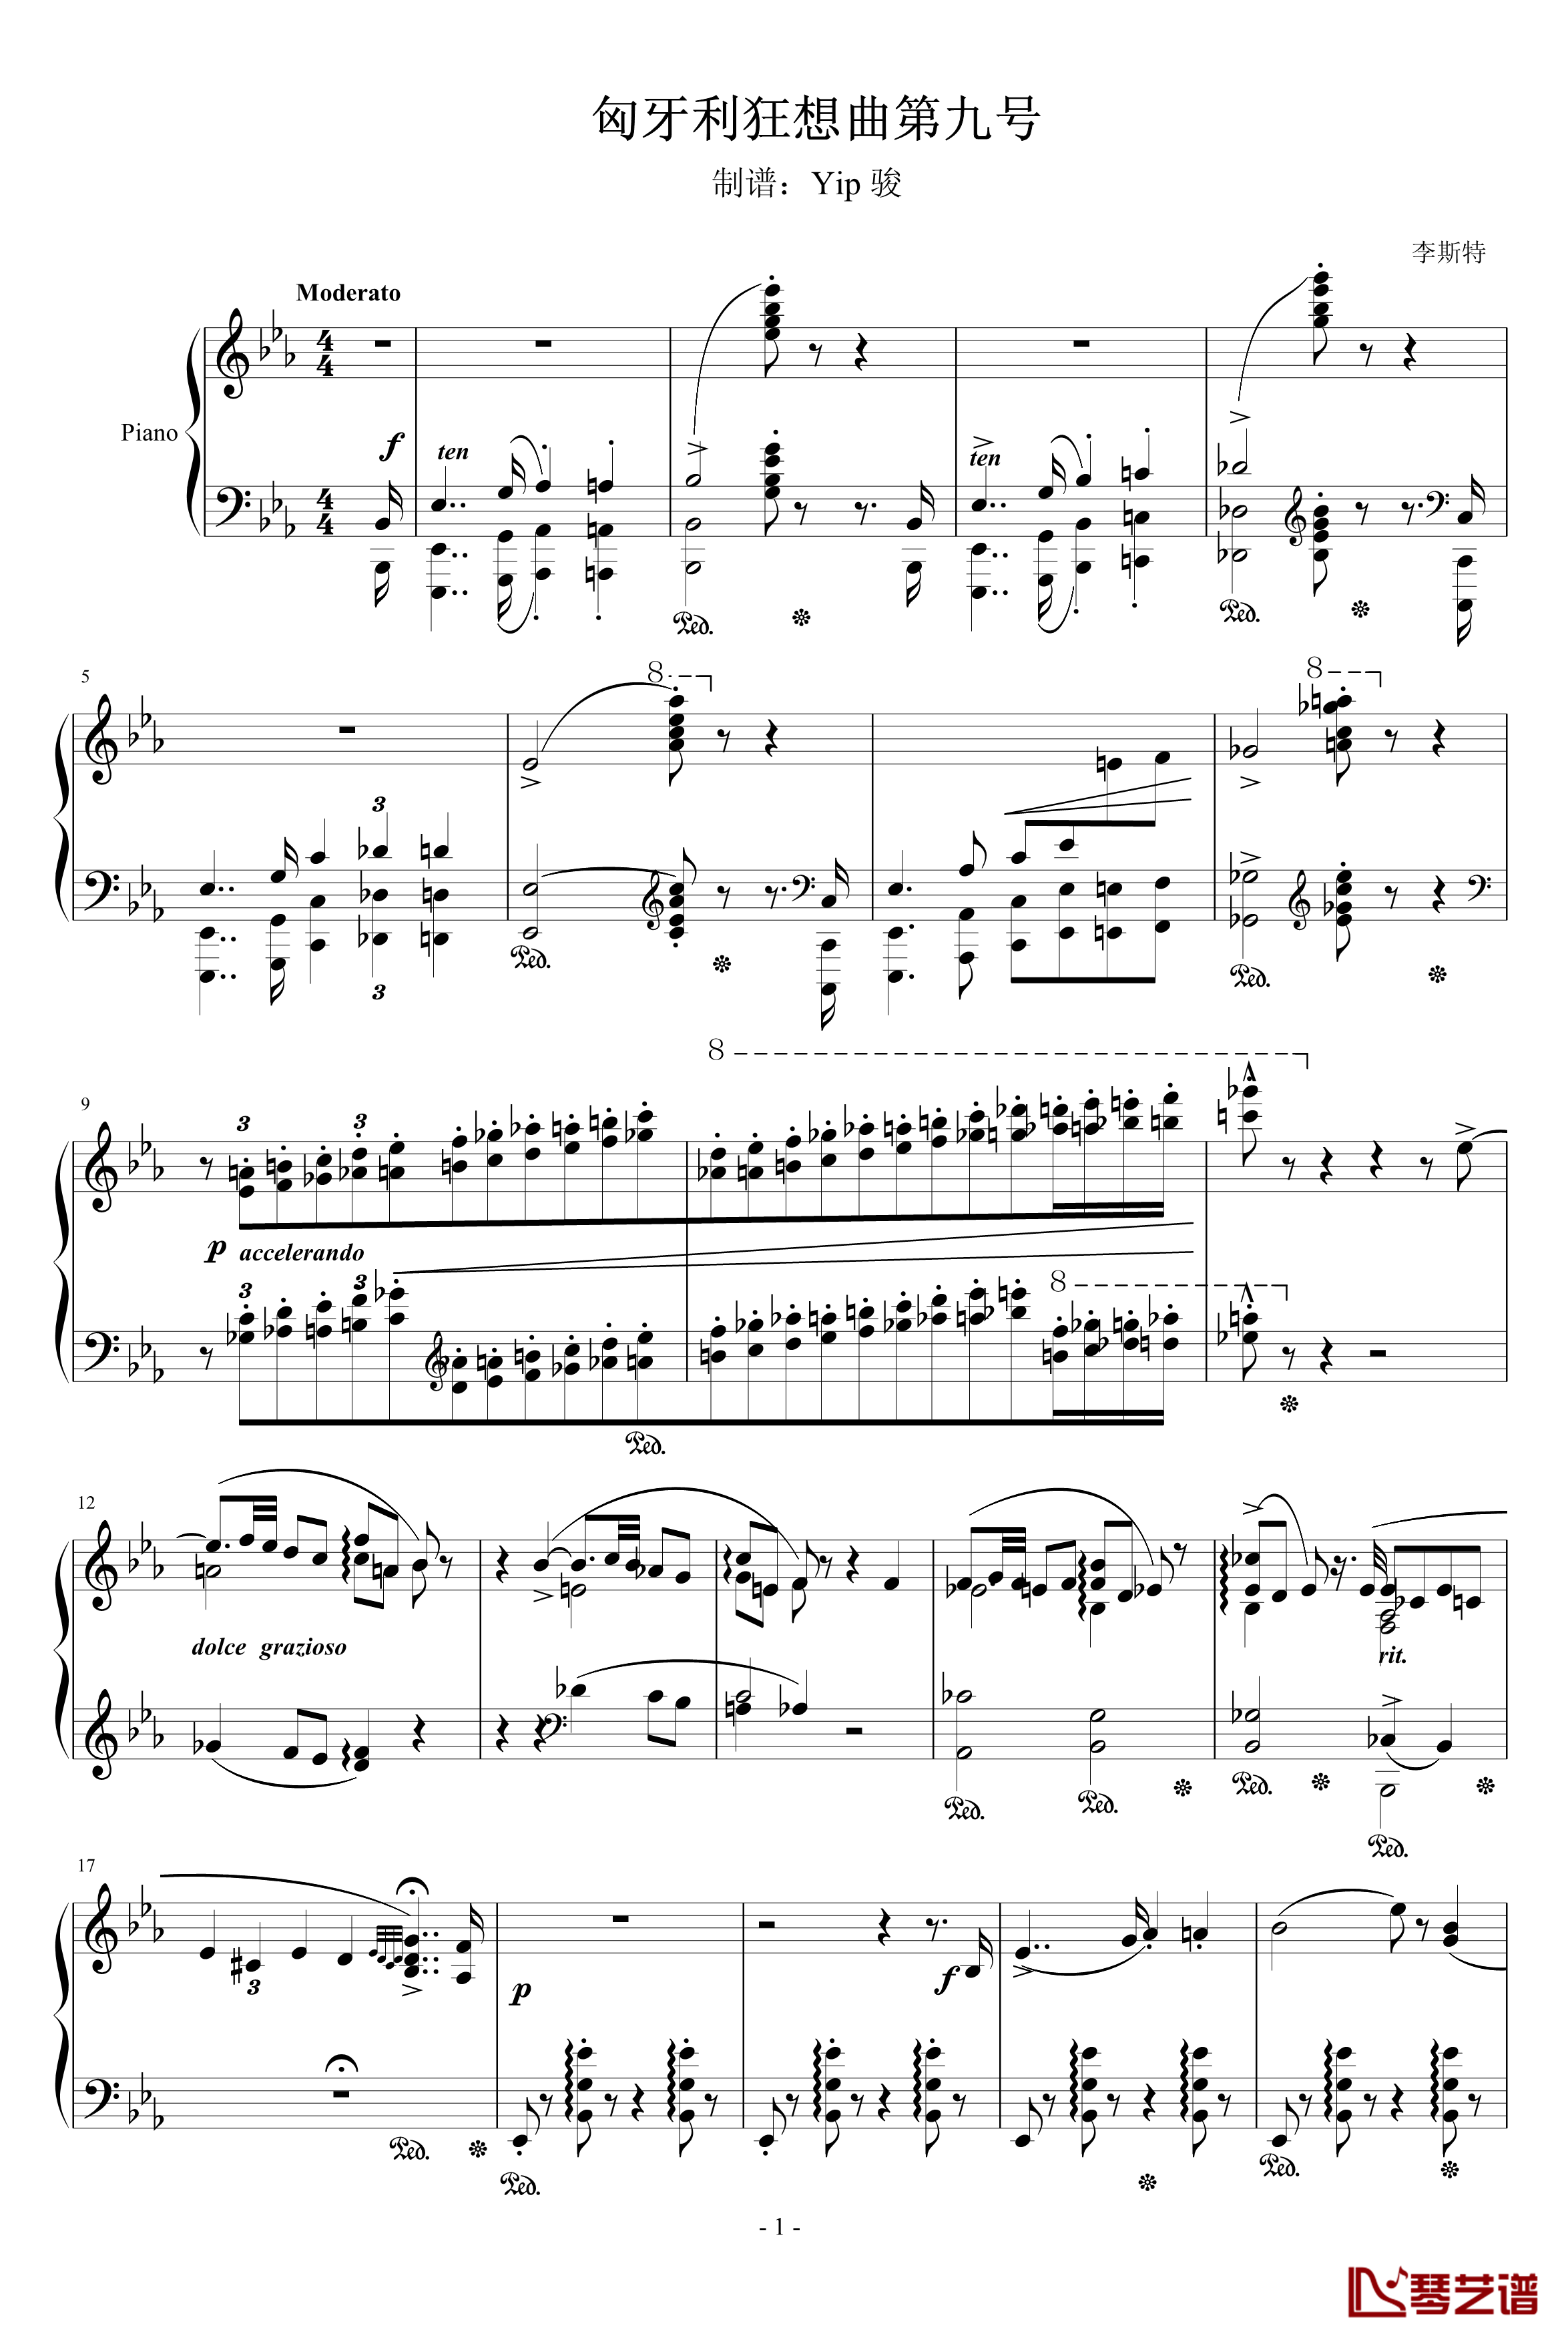 匈牙利狂想曲第9号钢琴谱-19首匈狂里篇幅最浩大、技巧最艰深的作品之一-李斯特1